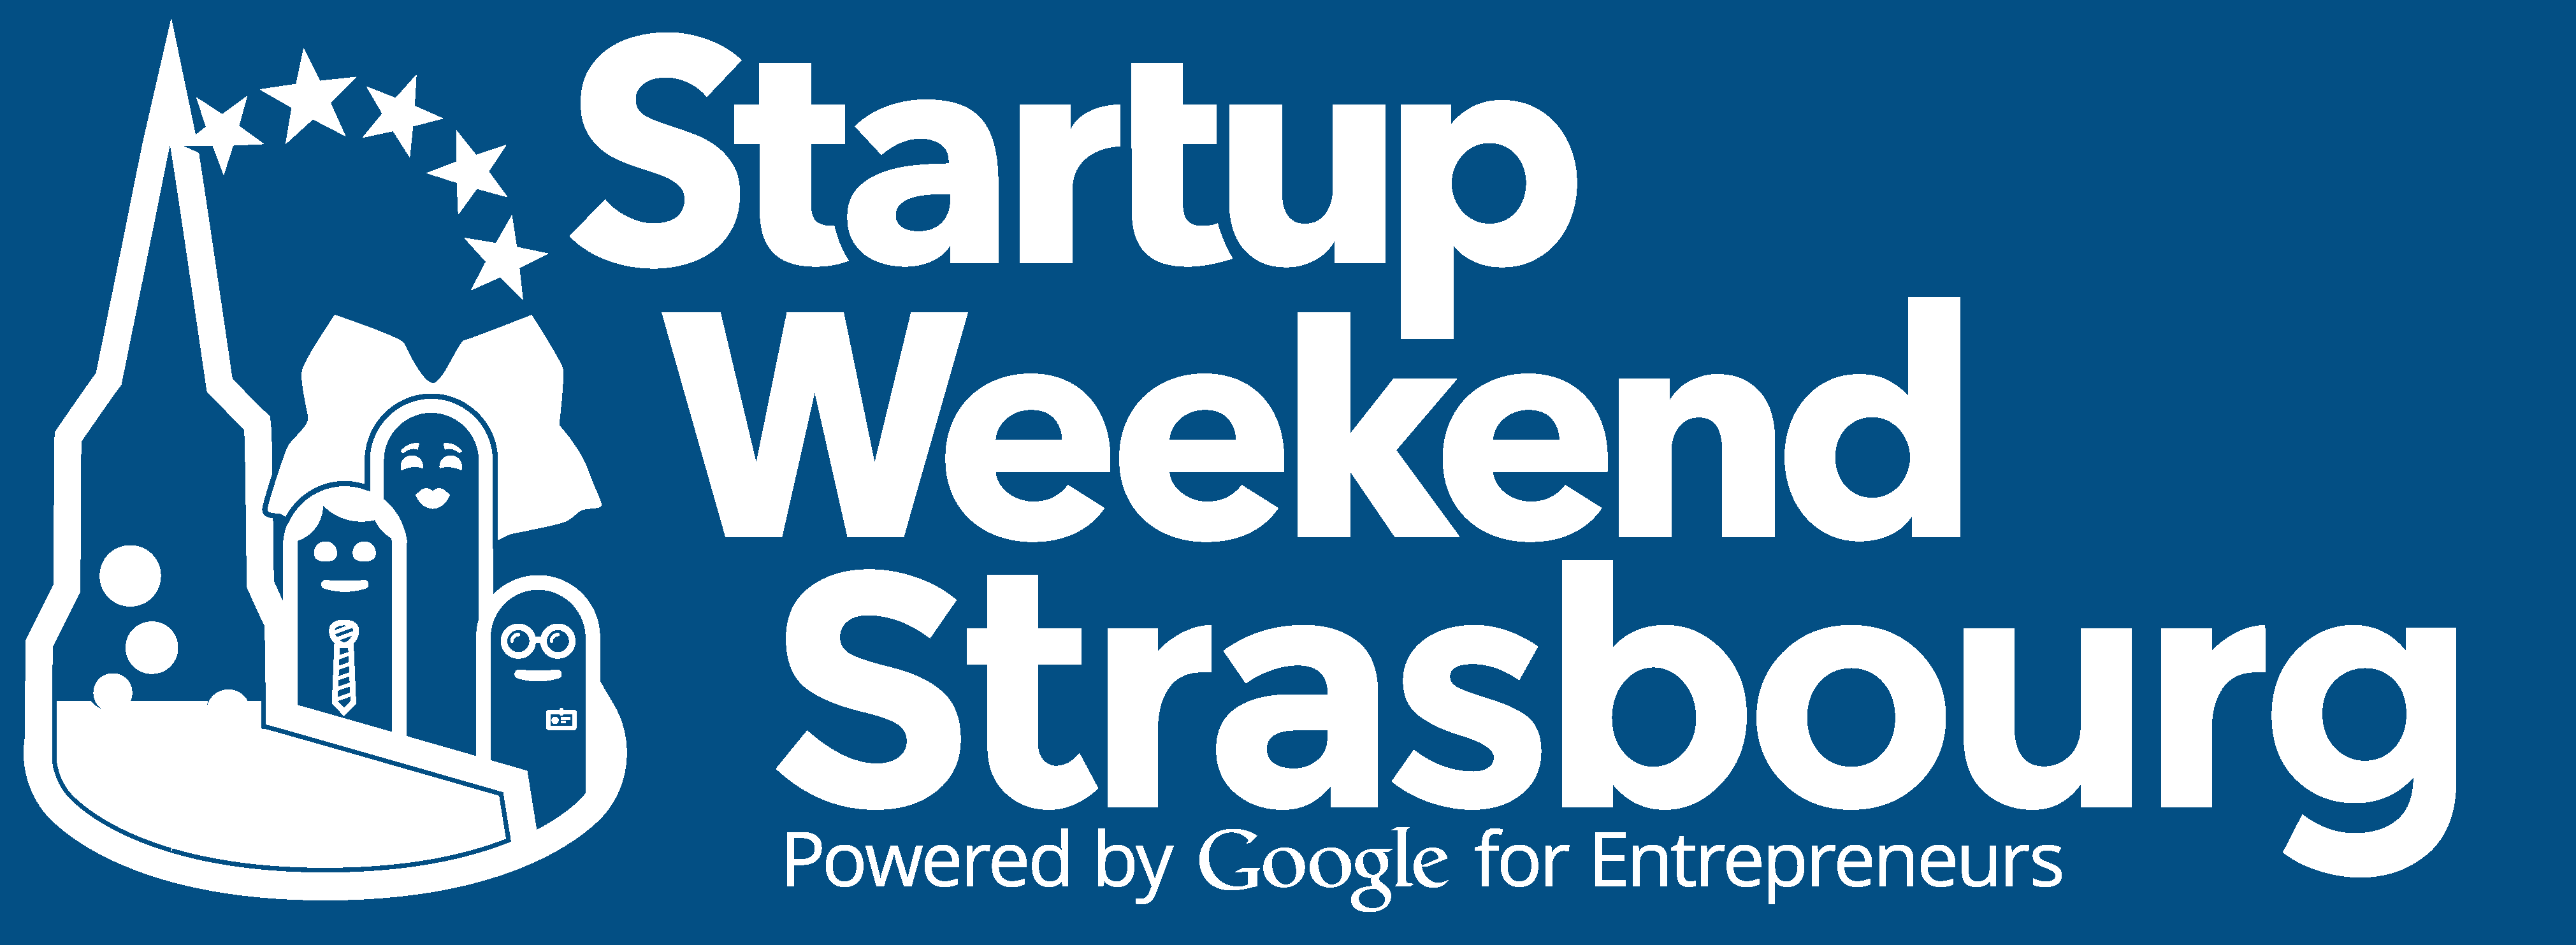 startup-week-end-stbg